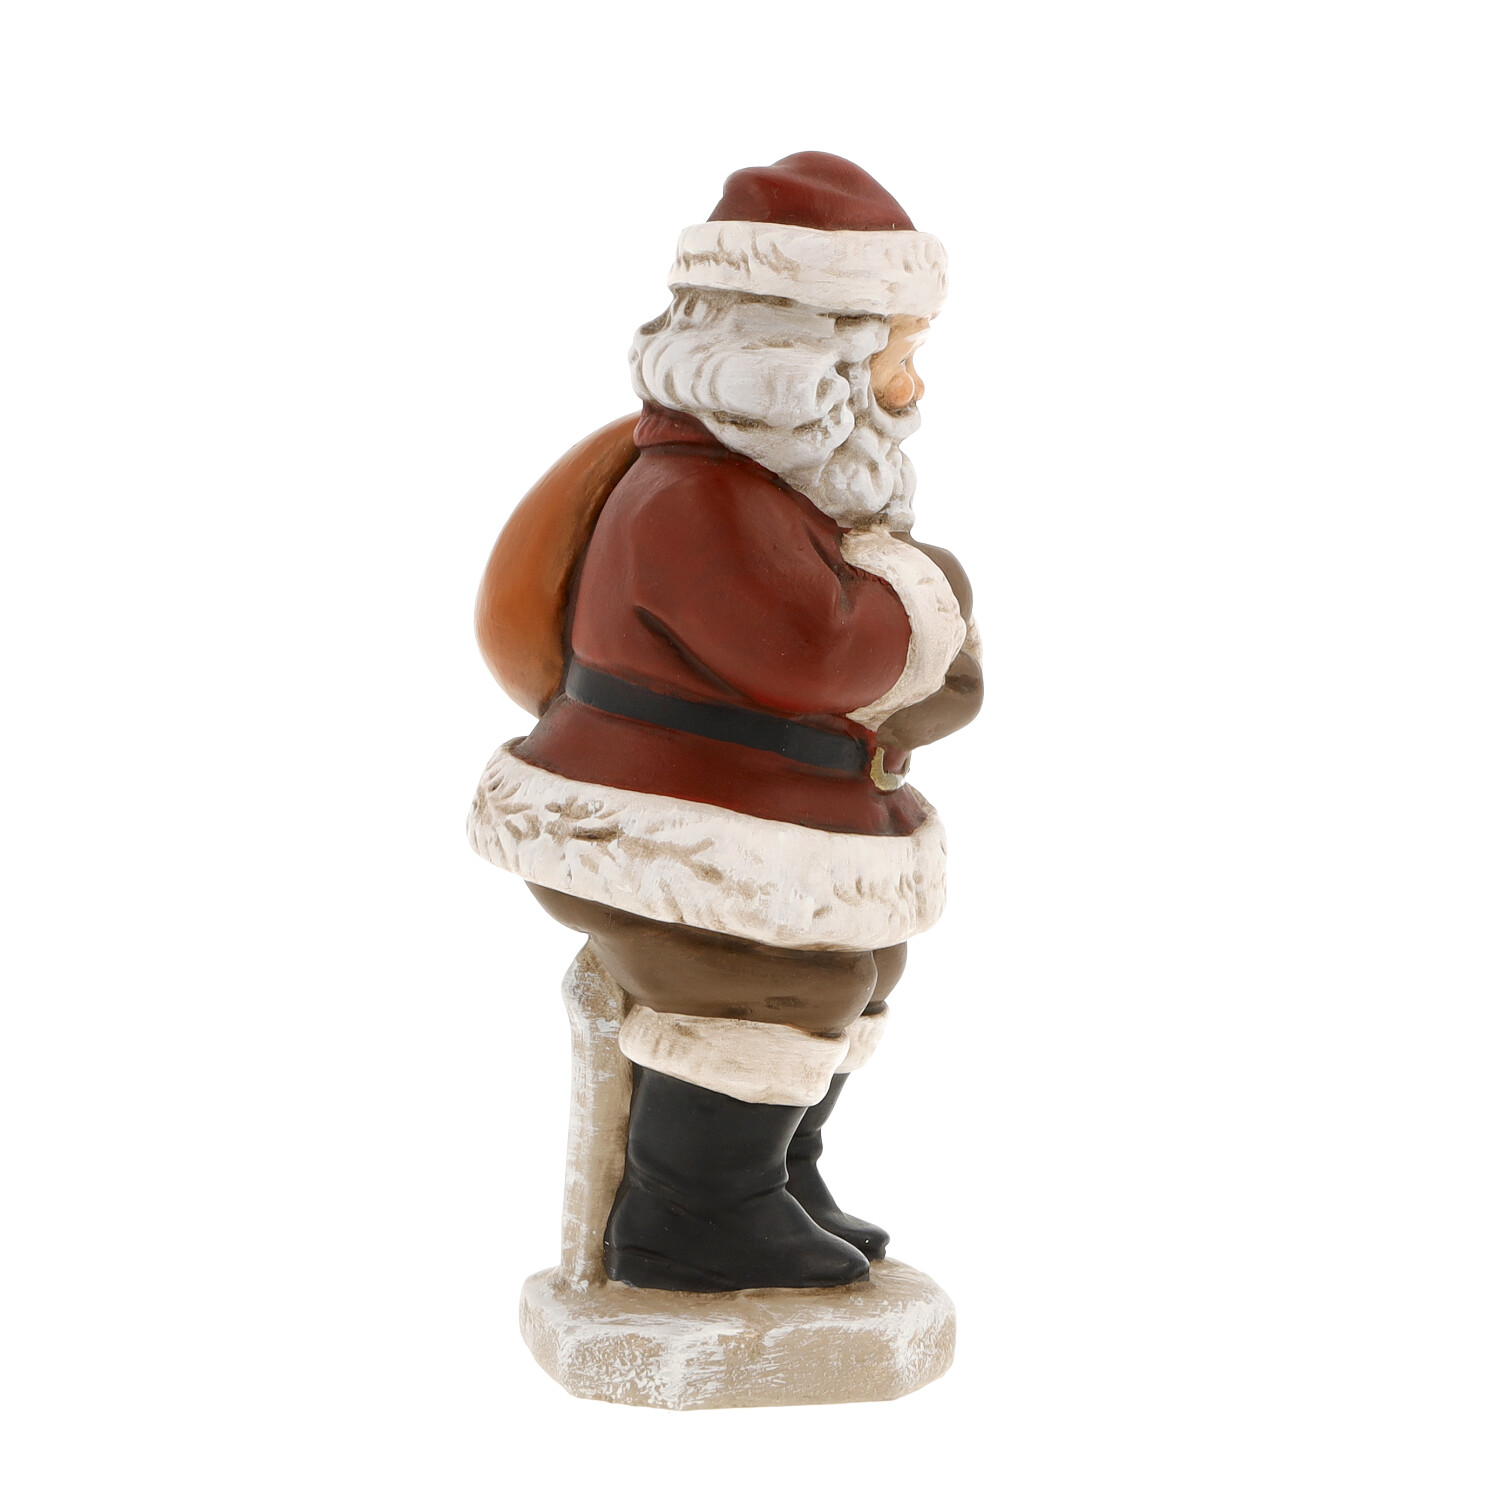 Kleiner Weihnachtsmann mit Zipfelmütze - Original MAROLIN®-Weihnachtsmann